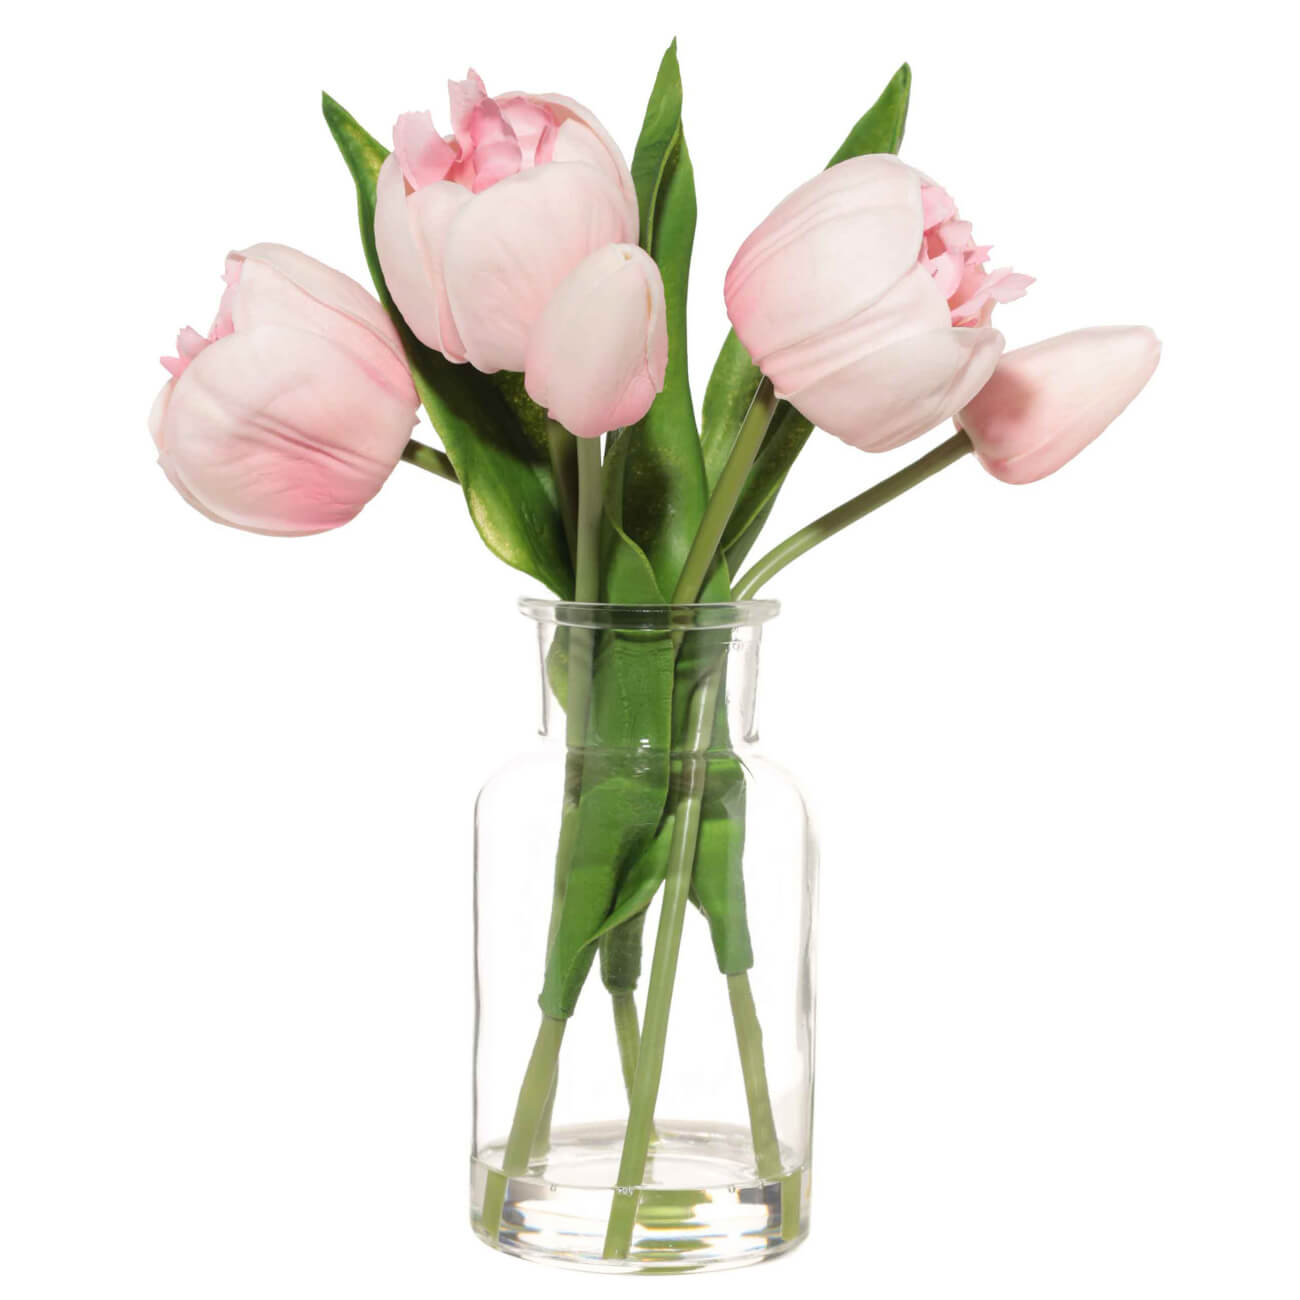 Букет искусственный, 21 см, в вазе, полиуретан/стекло, Розовые тюльпаны, Tulip garden букет мадам бовари